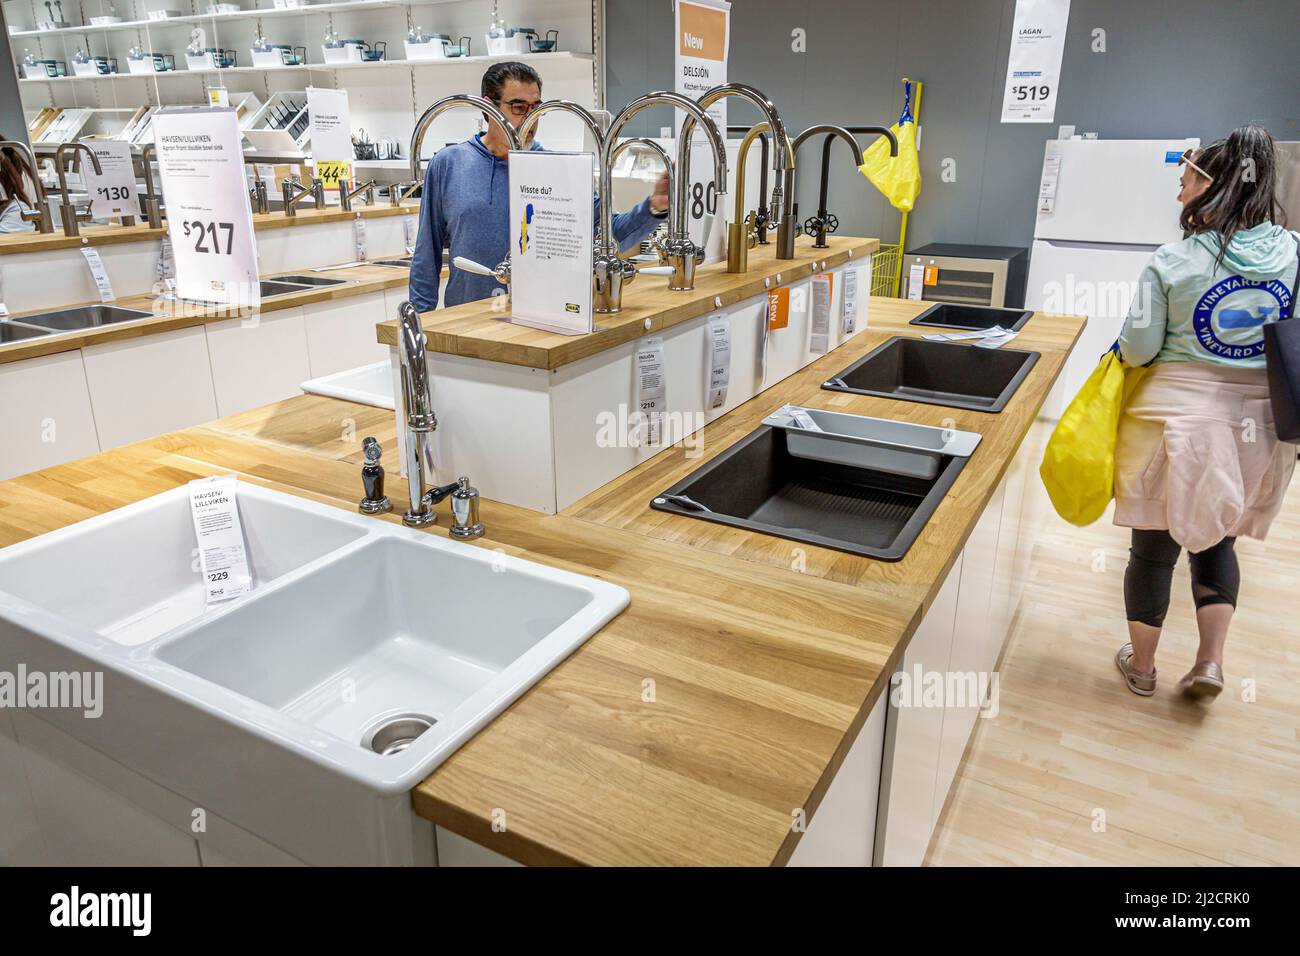 Miami Florida IKEA Wohnartikel Möbel Accessoires Möbel Dekor Shopping Shopper innen Innenauslage Verkauf sinkt Mann Frau Paar suchen Stockfoto